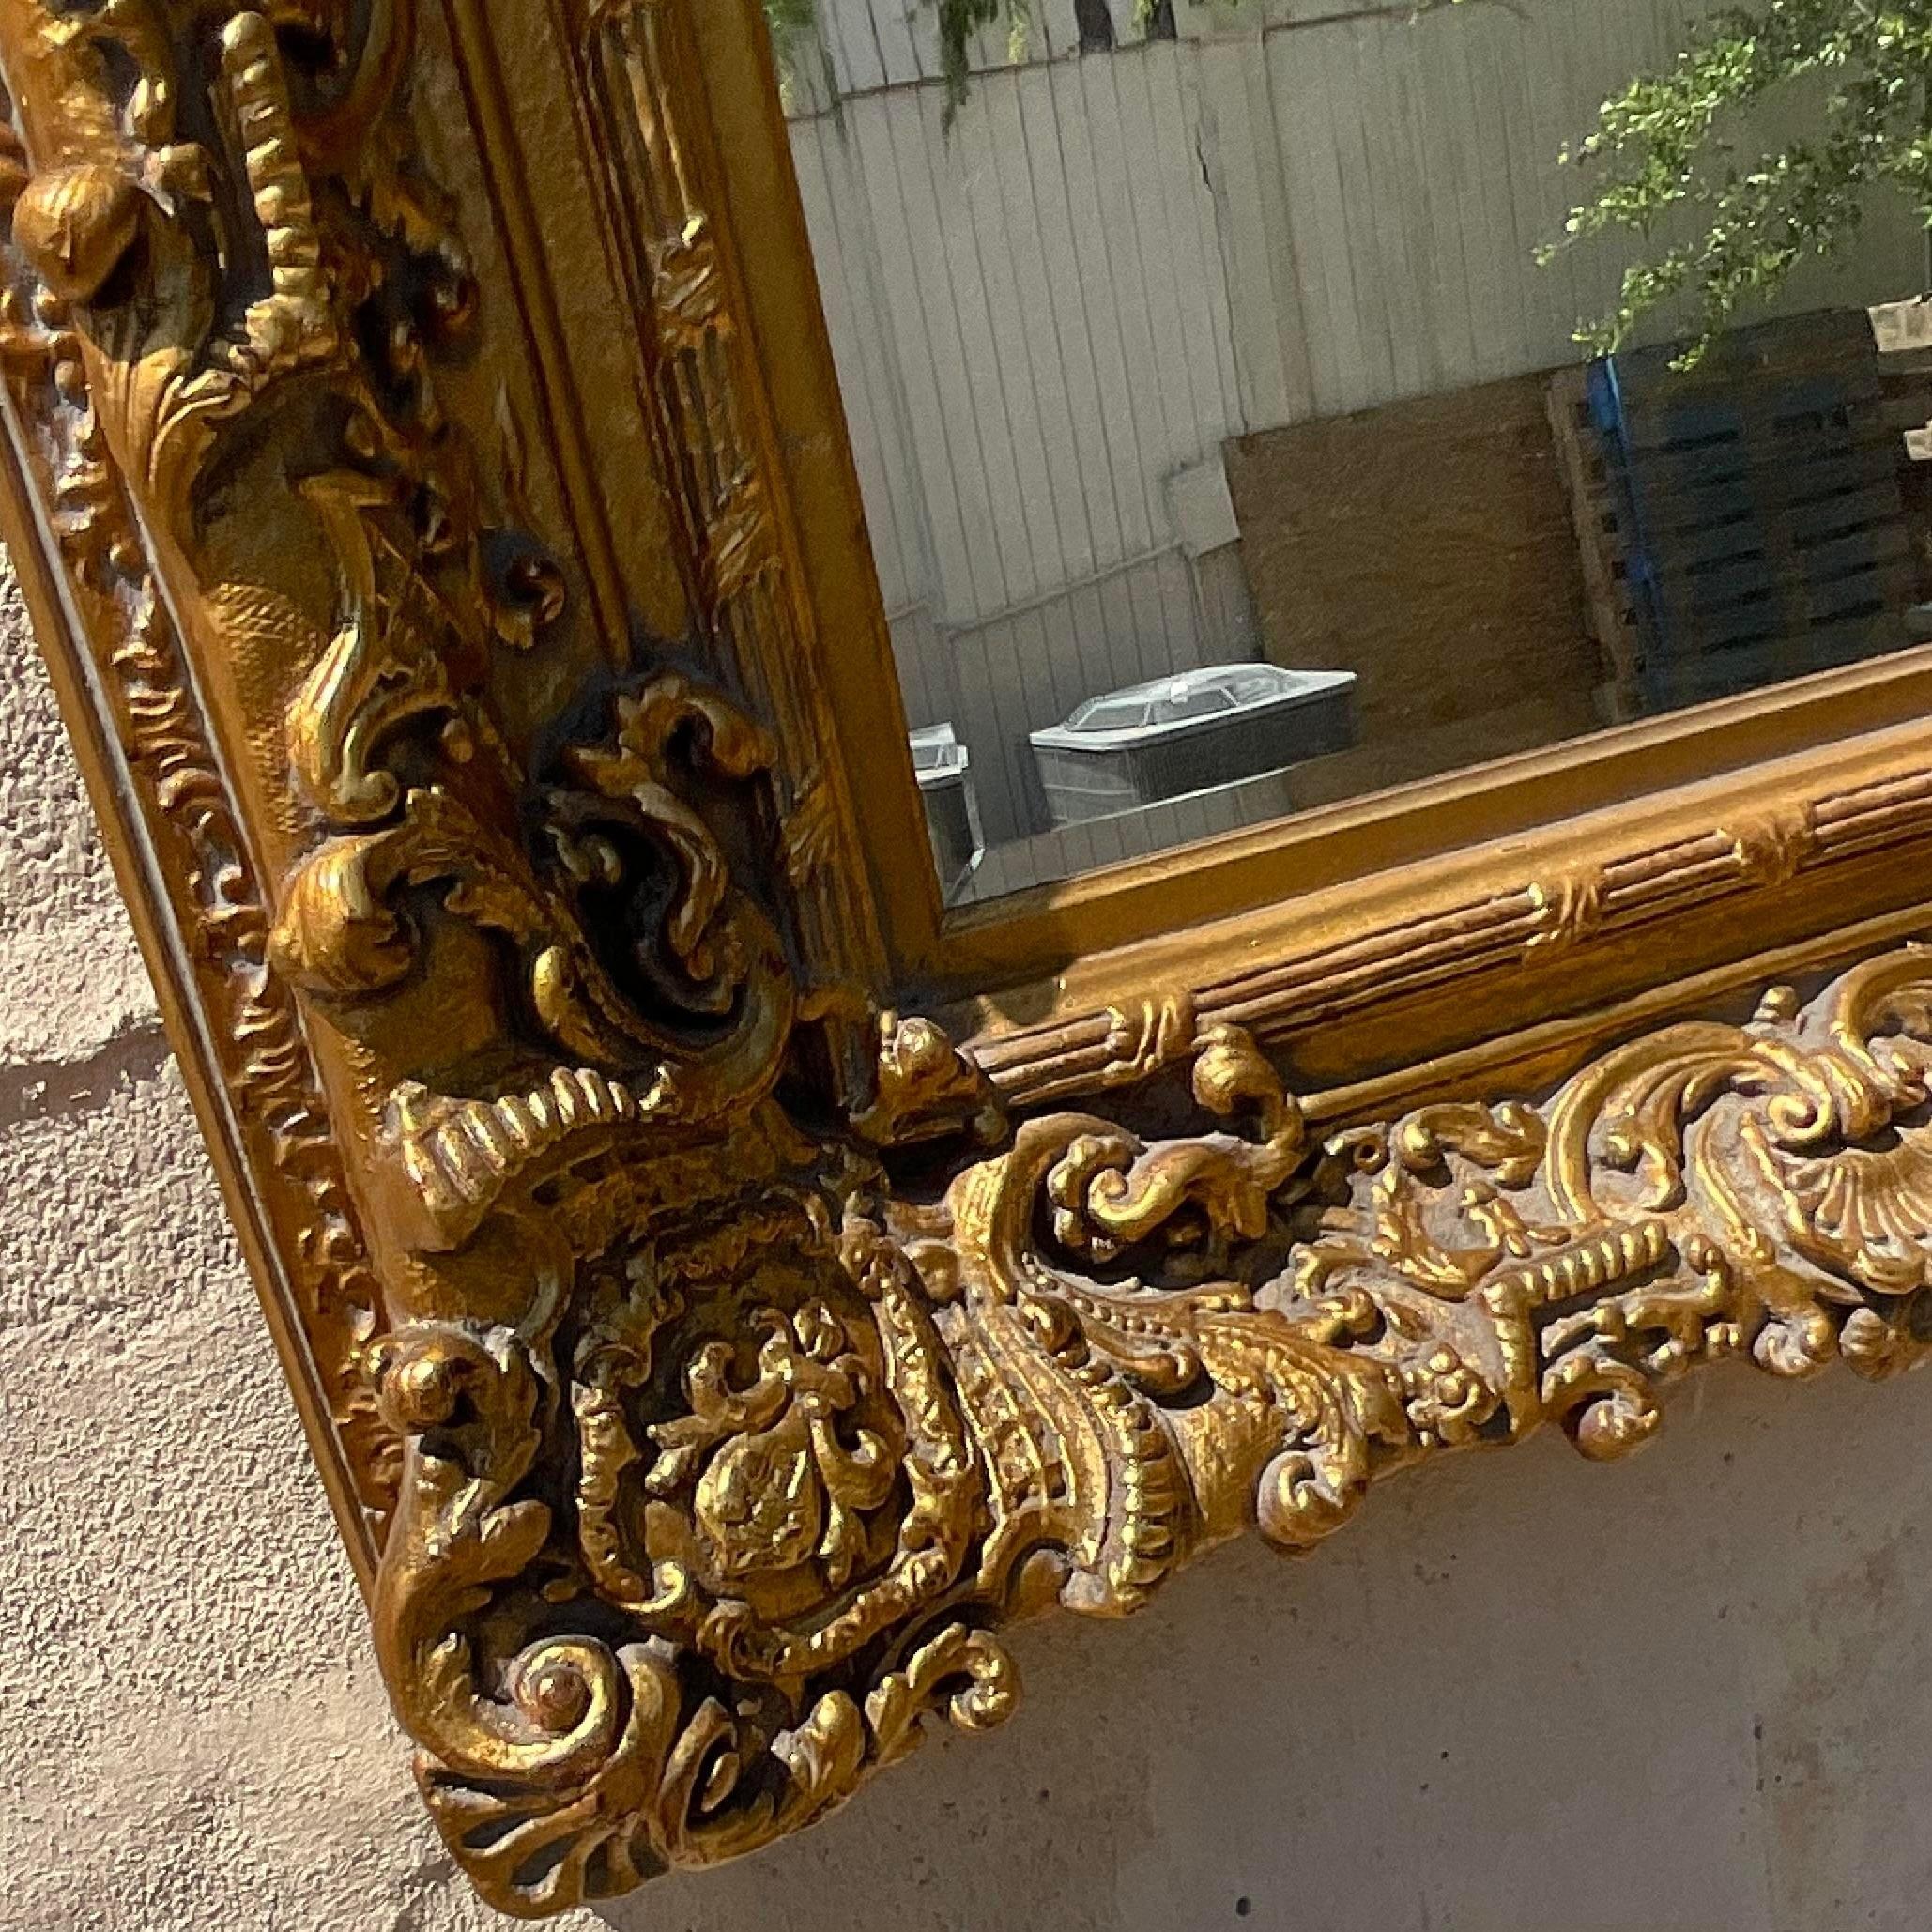 Offrez-vous un luxe intemporel avec notre miroir Vintage Regency en bois sculpté et doré. De fabrication américaine, ce miroir présente des sculptures en bois doré exquises, alliant l'élégance classique de la Régence à l'artisanat d'art pour un